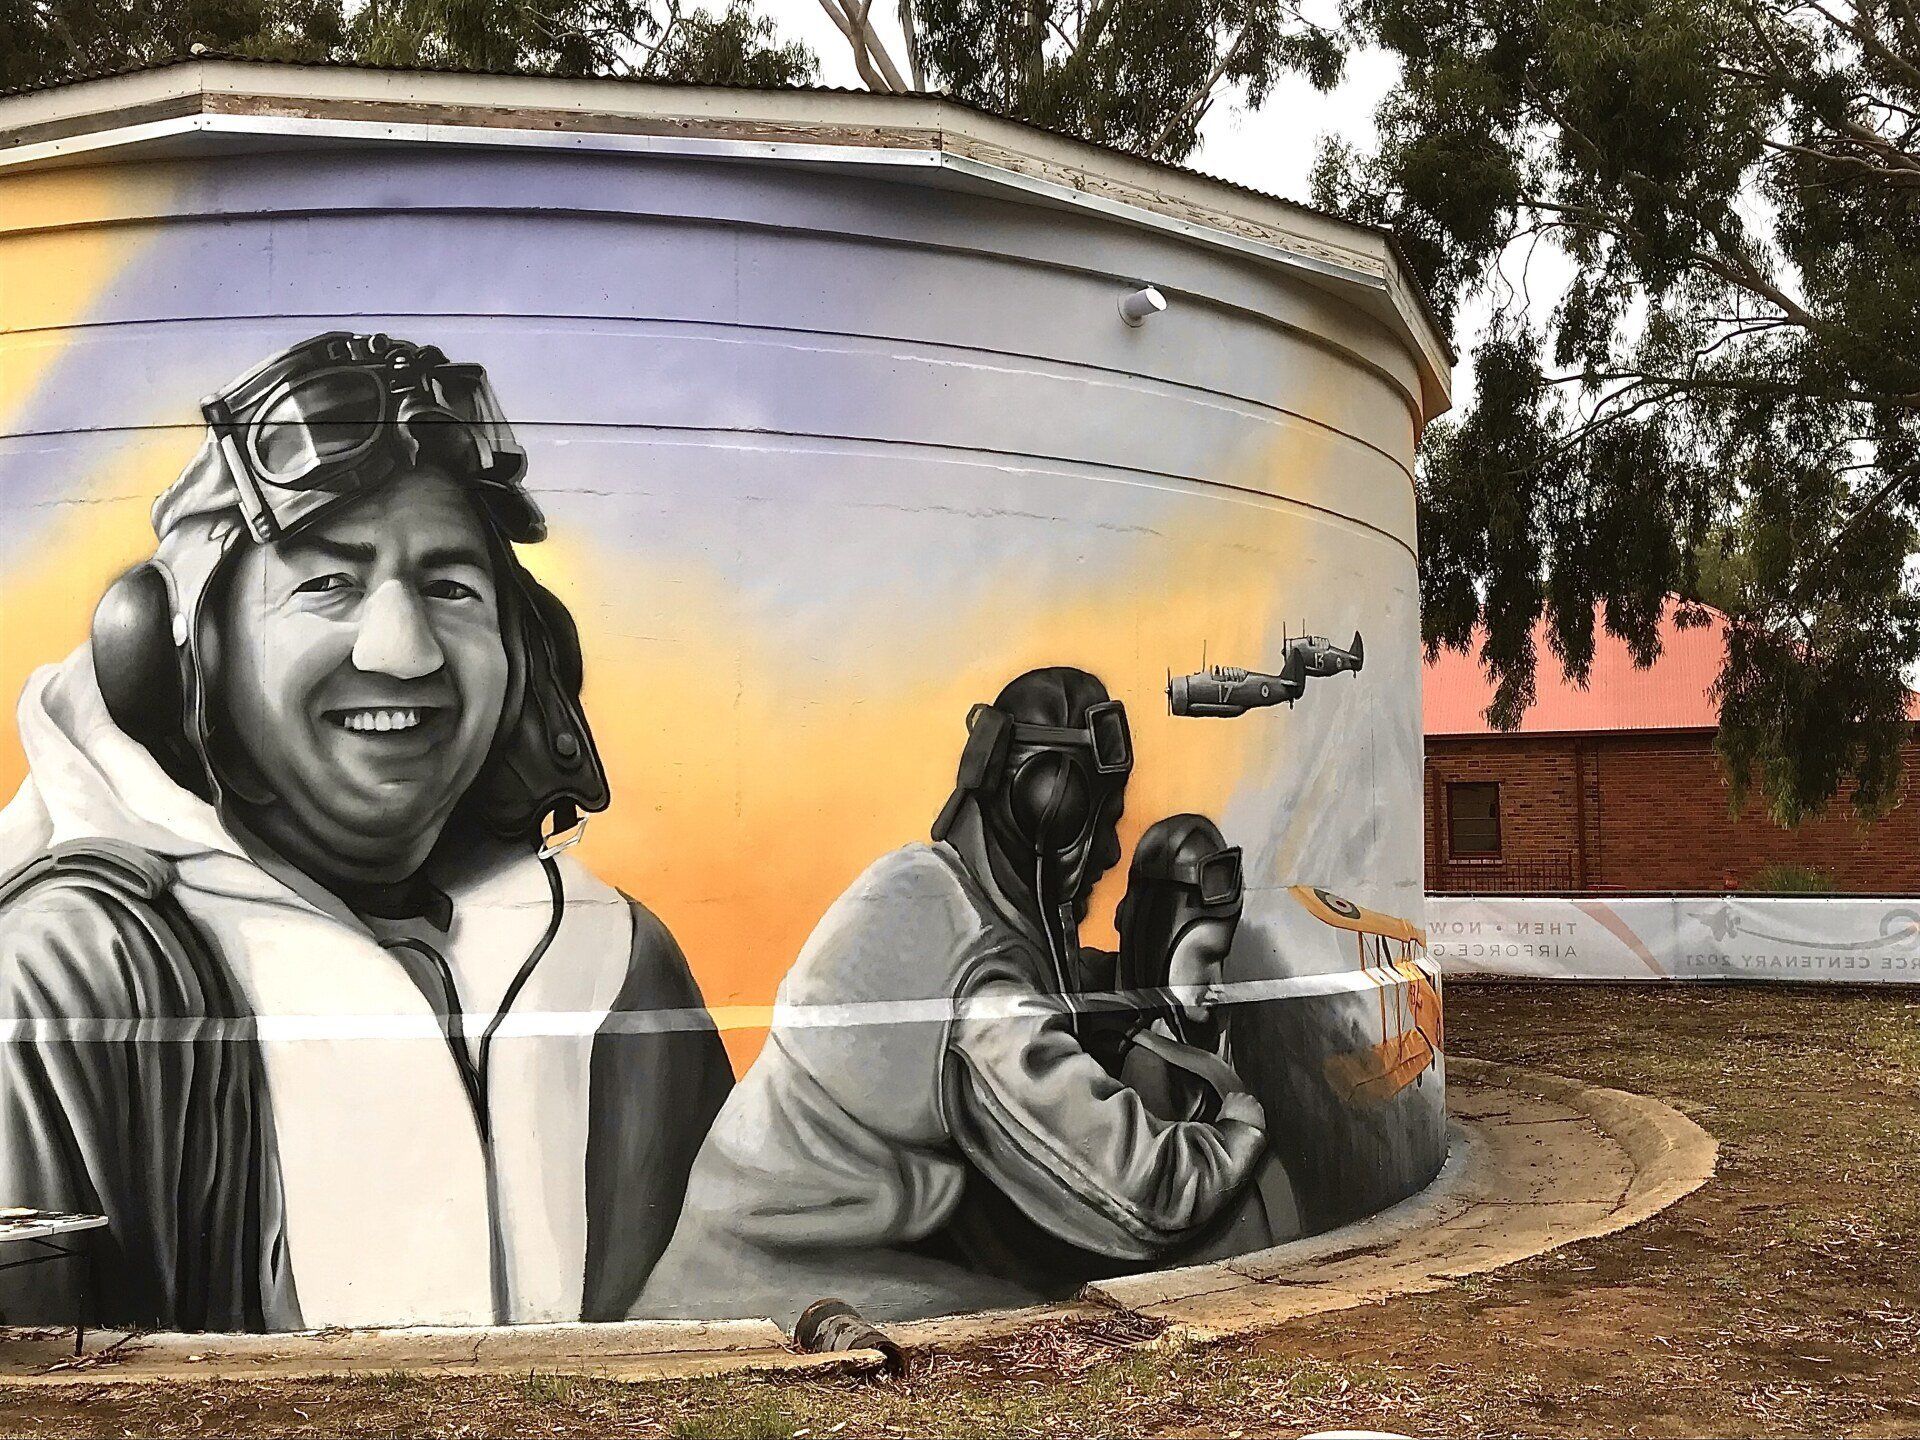 Wagga Wagga RAAF Water Tank Art, Australian Silo Art trail